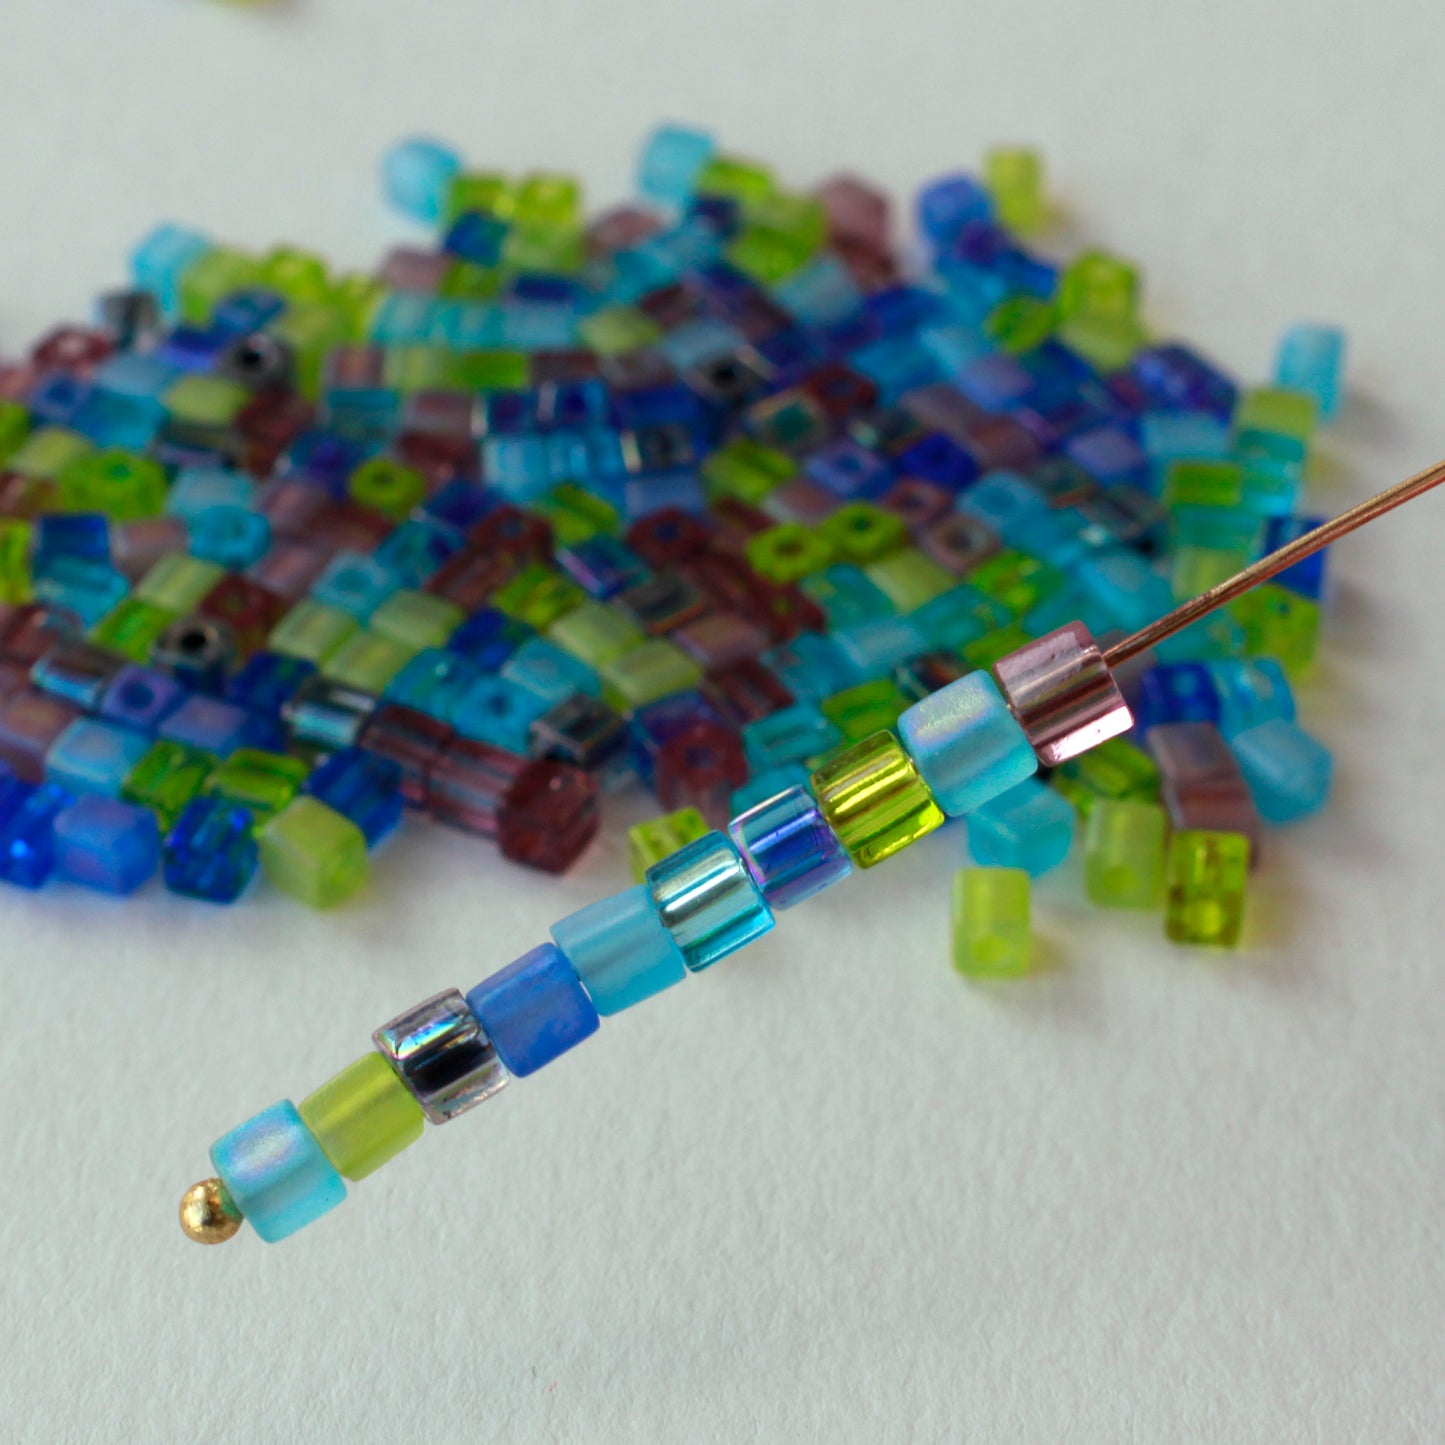 Seed Beads - 4mm Cube - 134 - Miyuki Beads - Tamara Scott Designs